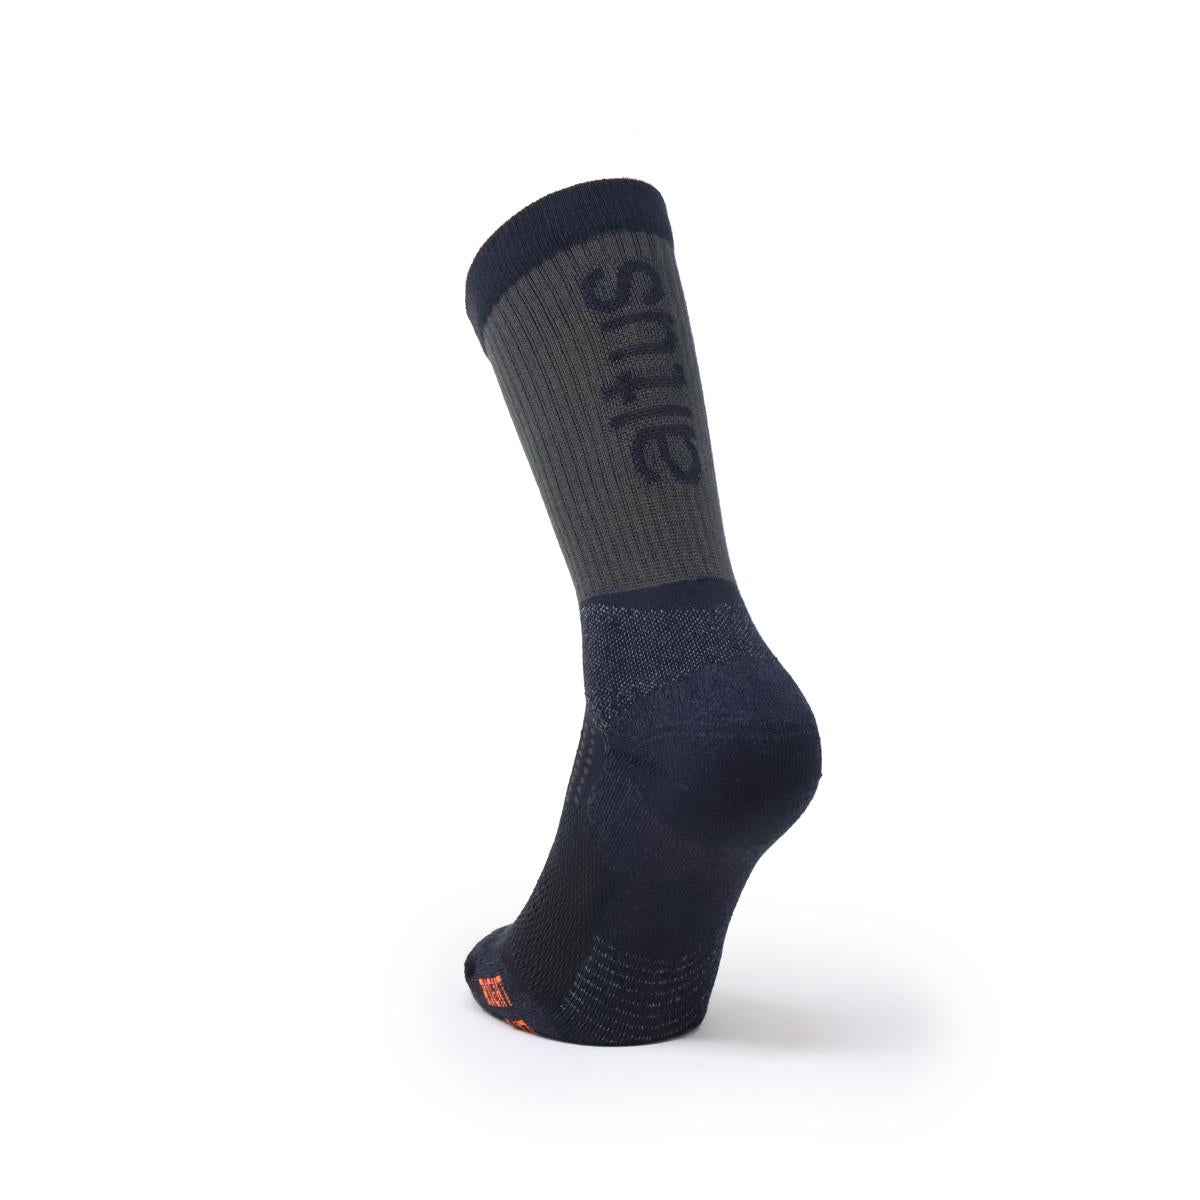 Altus CASPIO Coolmax sock